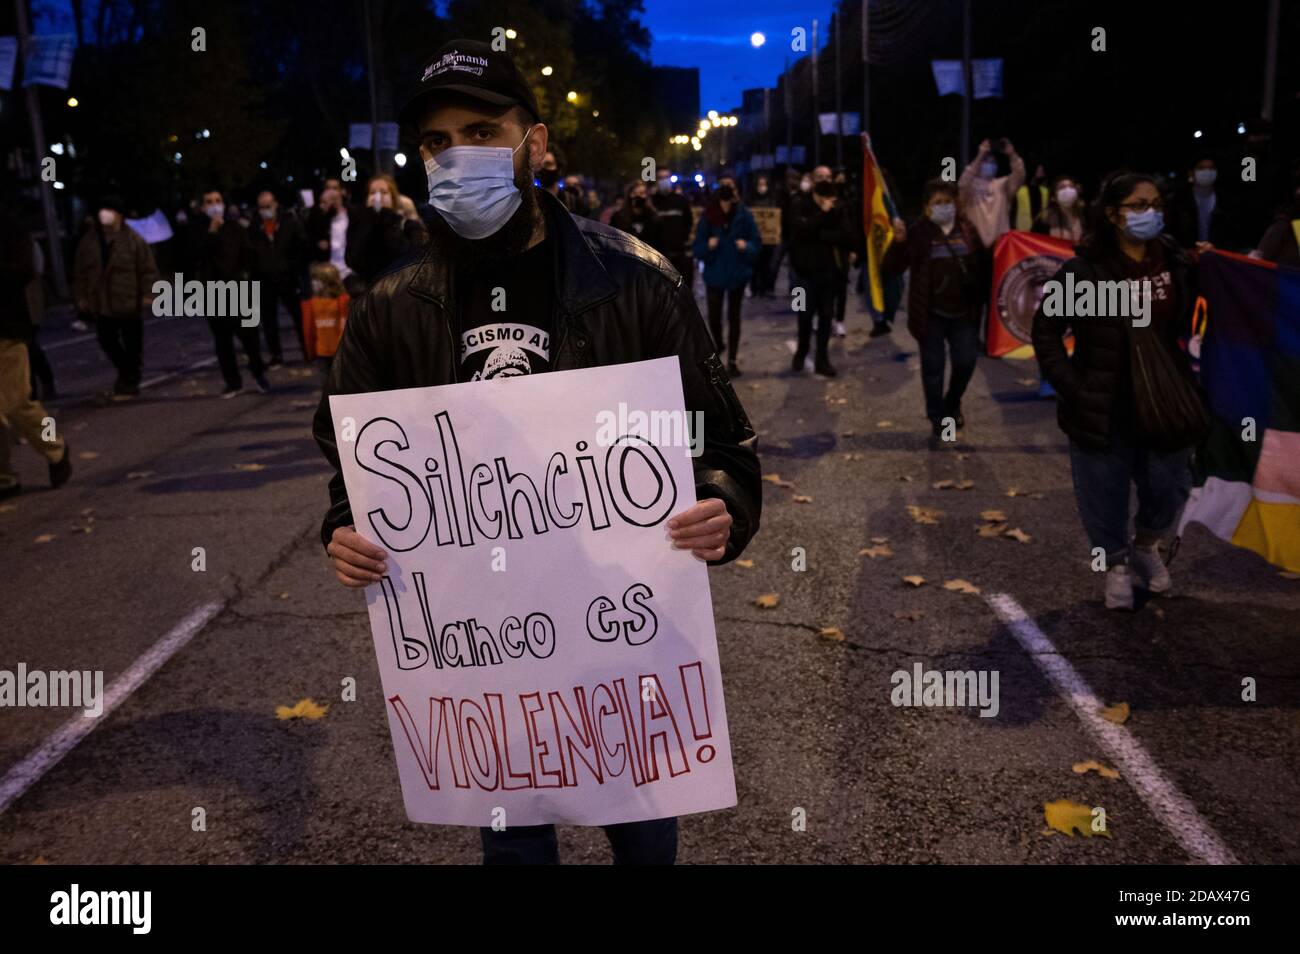 Madrid, España. 15 de noviembre de 2020. Un hombre que lleva un cartel que dice "la ciencia blanca es violencia" durante una protesta contra el racismo y la xenofobia. Crédito: Marcos del Mazo/Alamy Live News Foto de stock